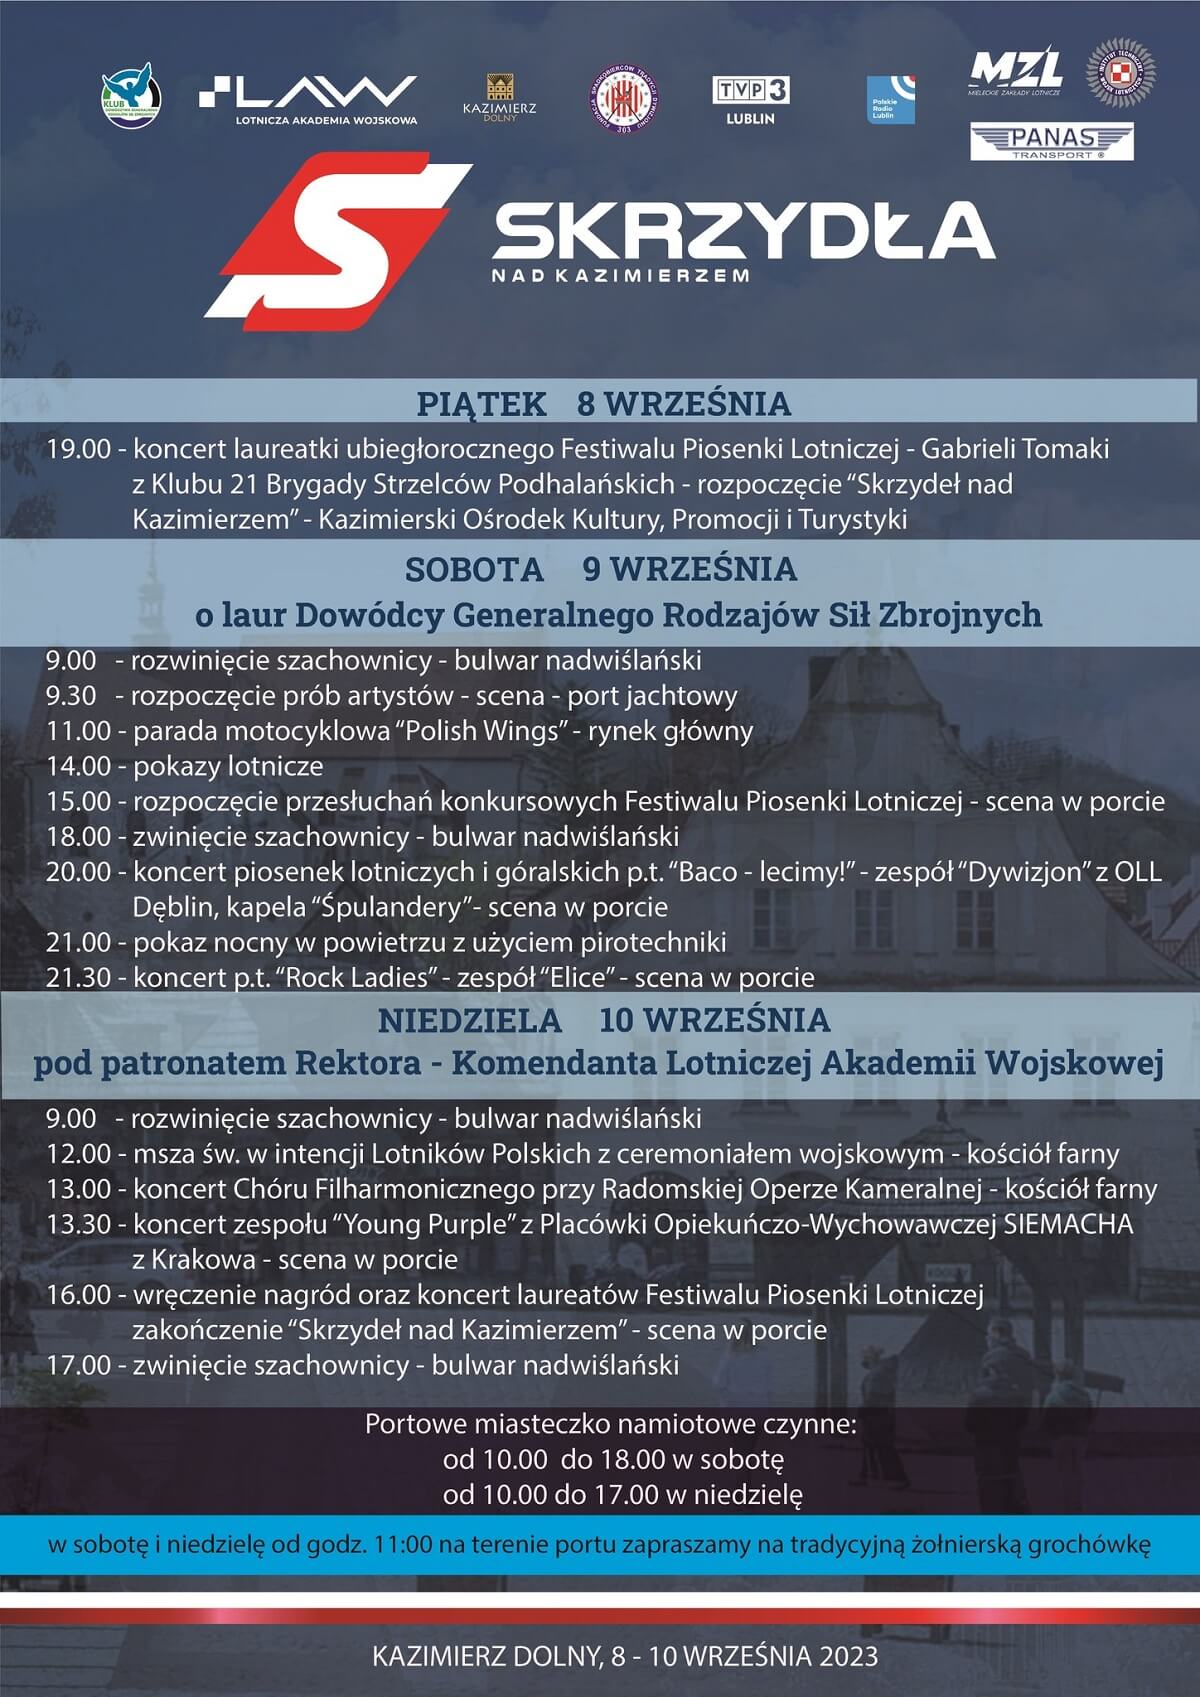 Skrzydła nad Kazimierzem 2023 - plakat, program wydarzenia